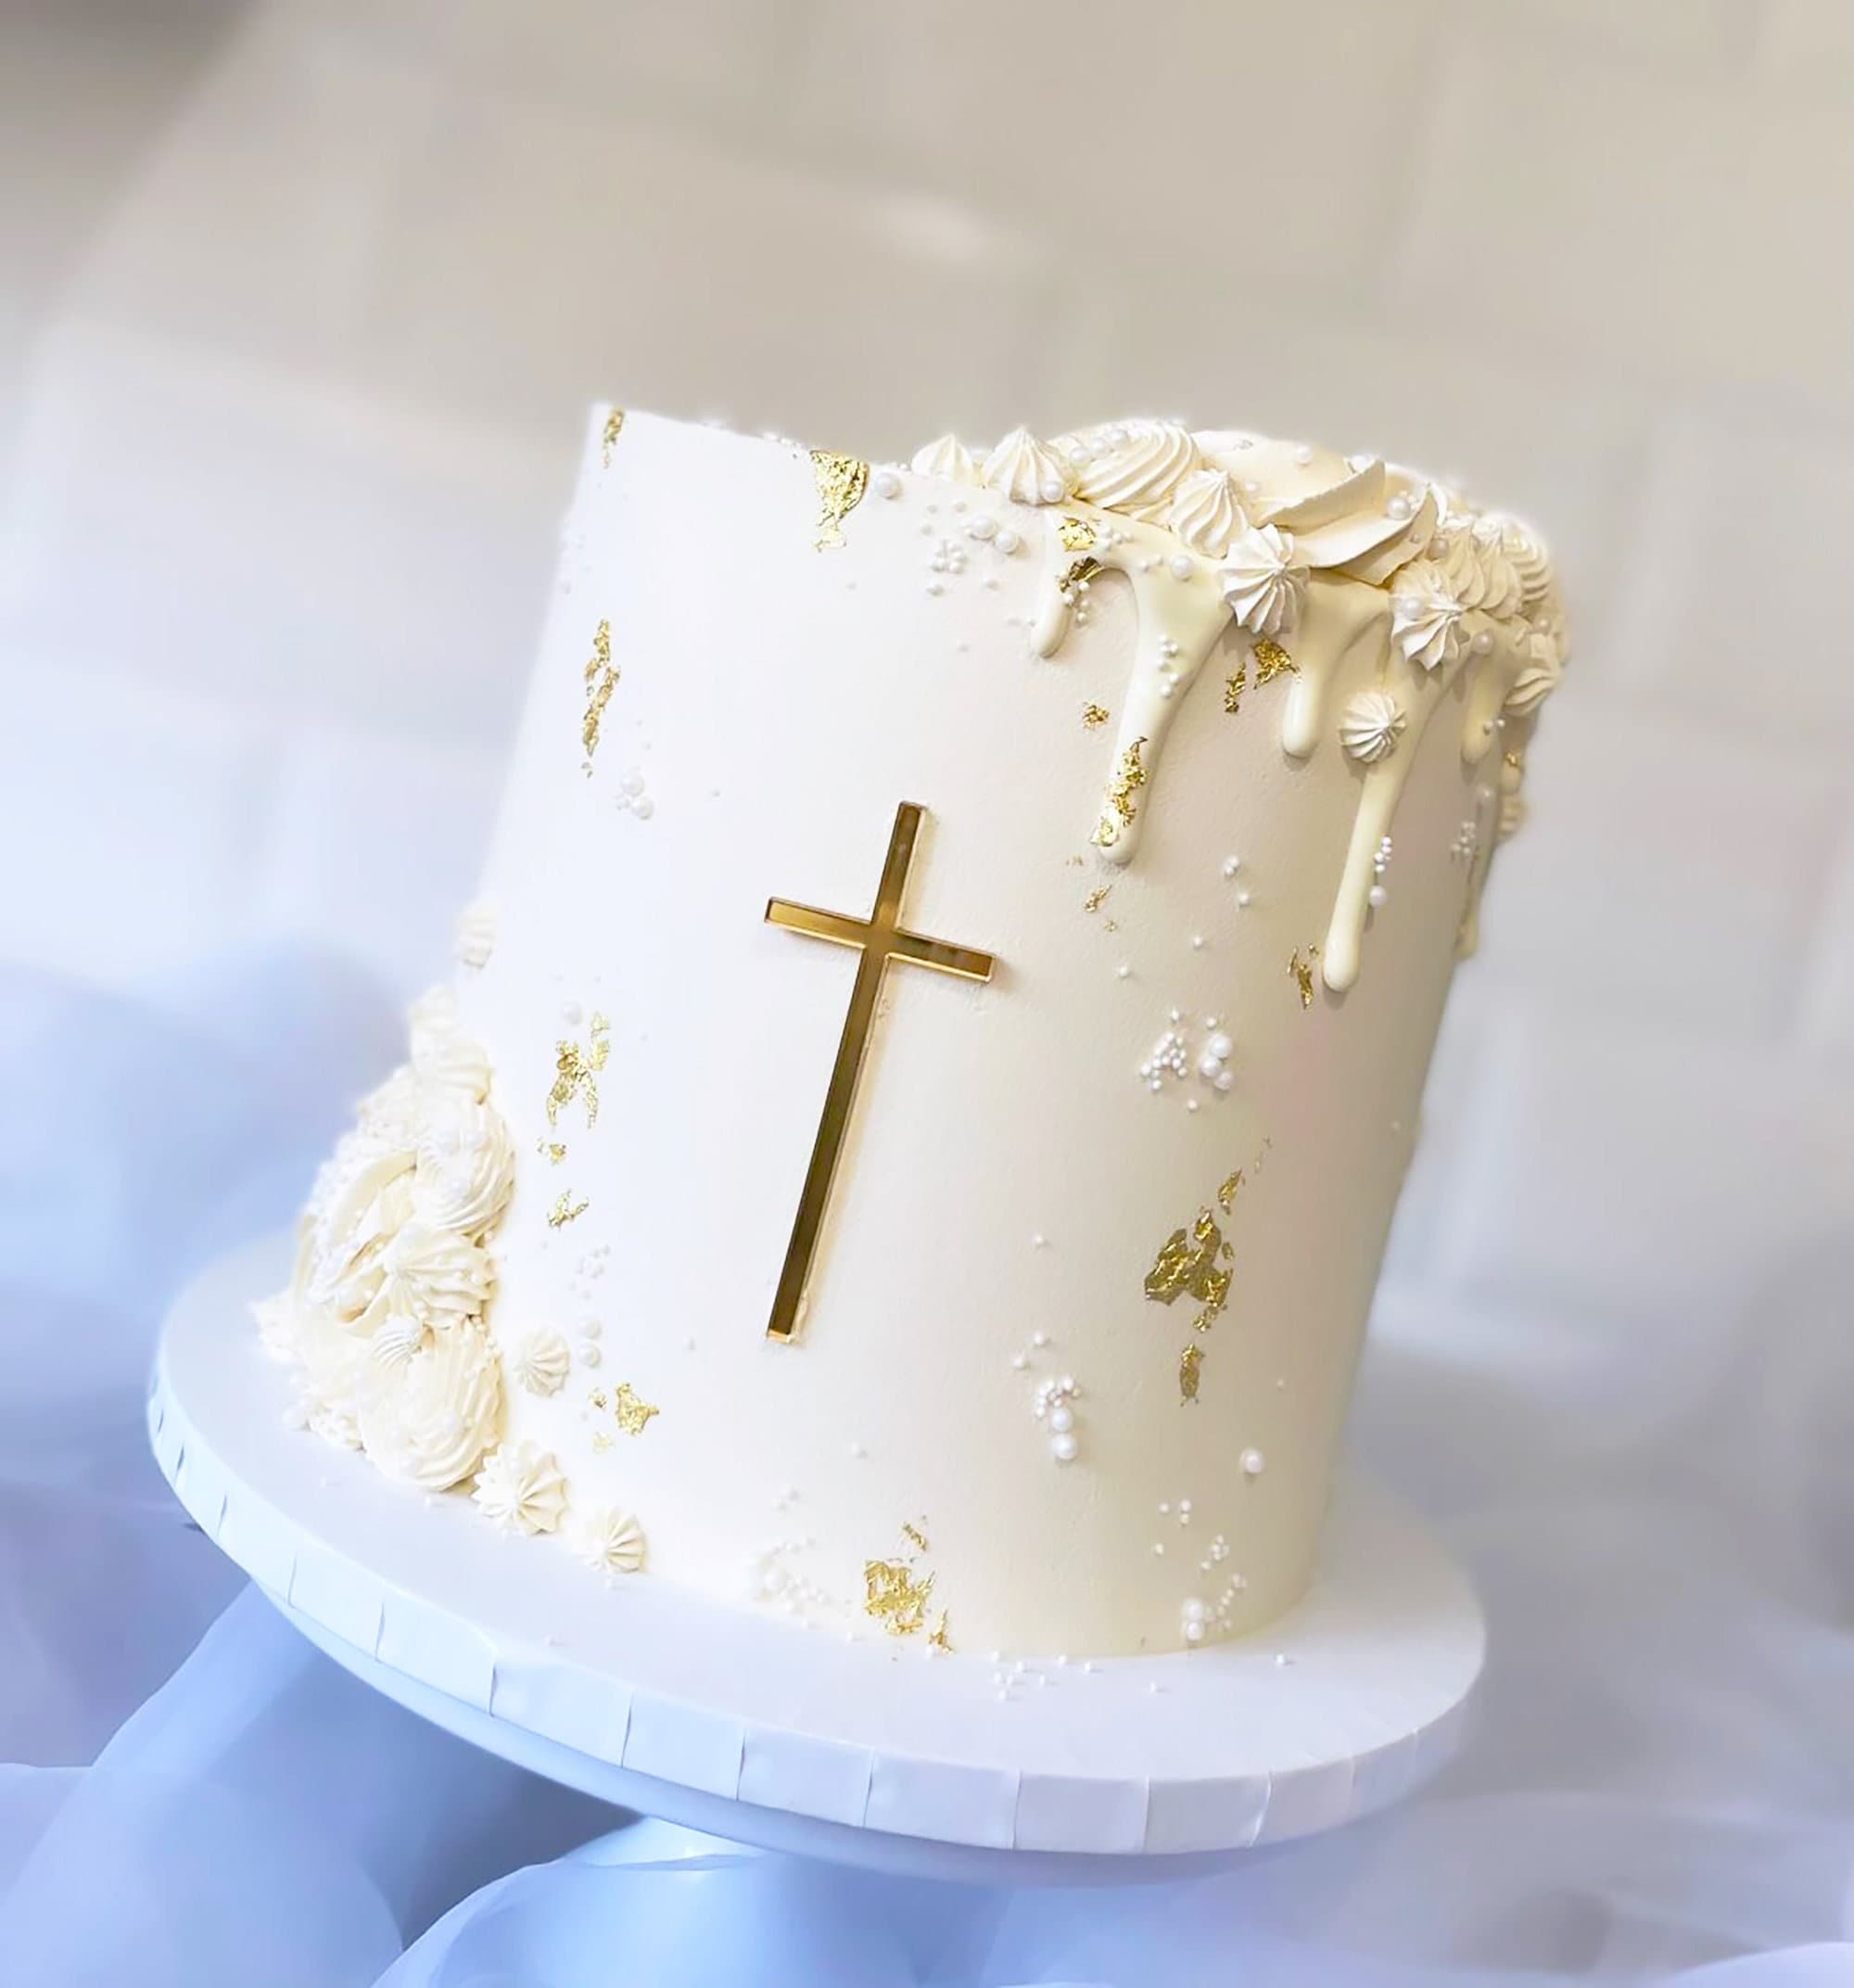 Épinglé sur Baptismal cake + gâteau de baptême